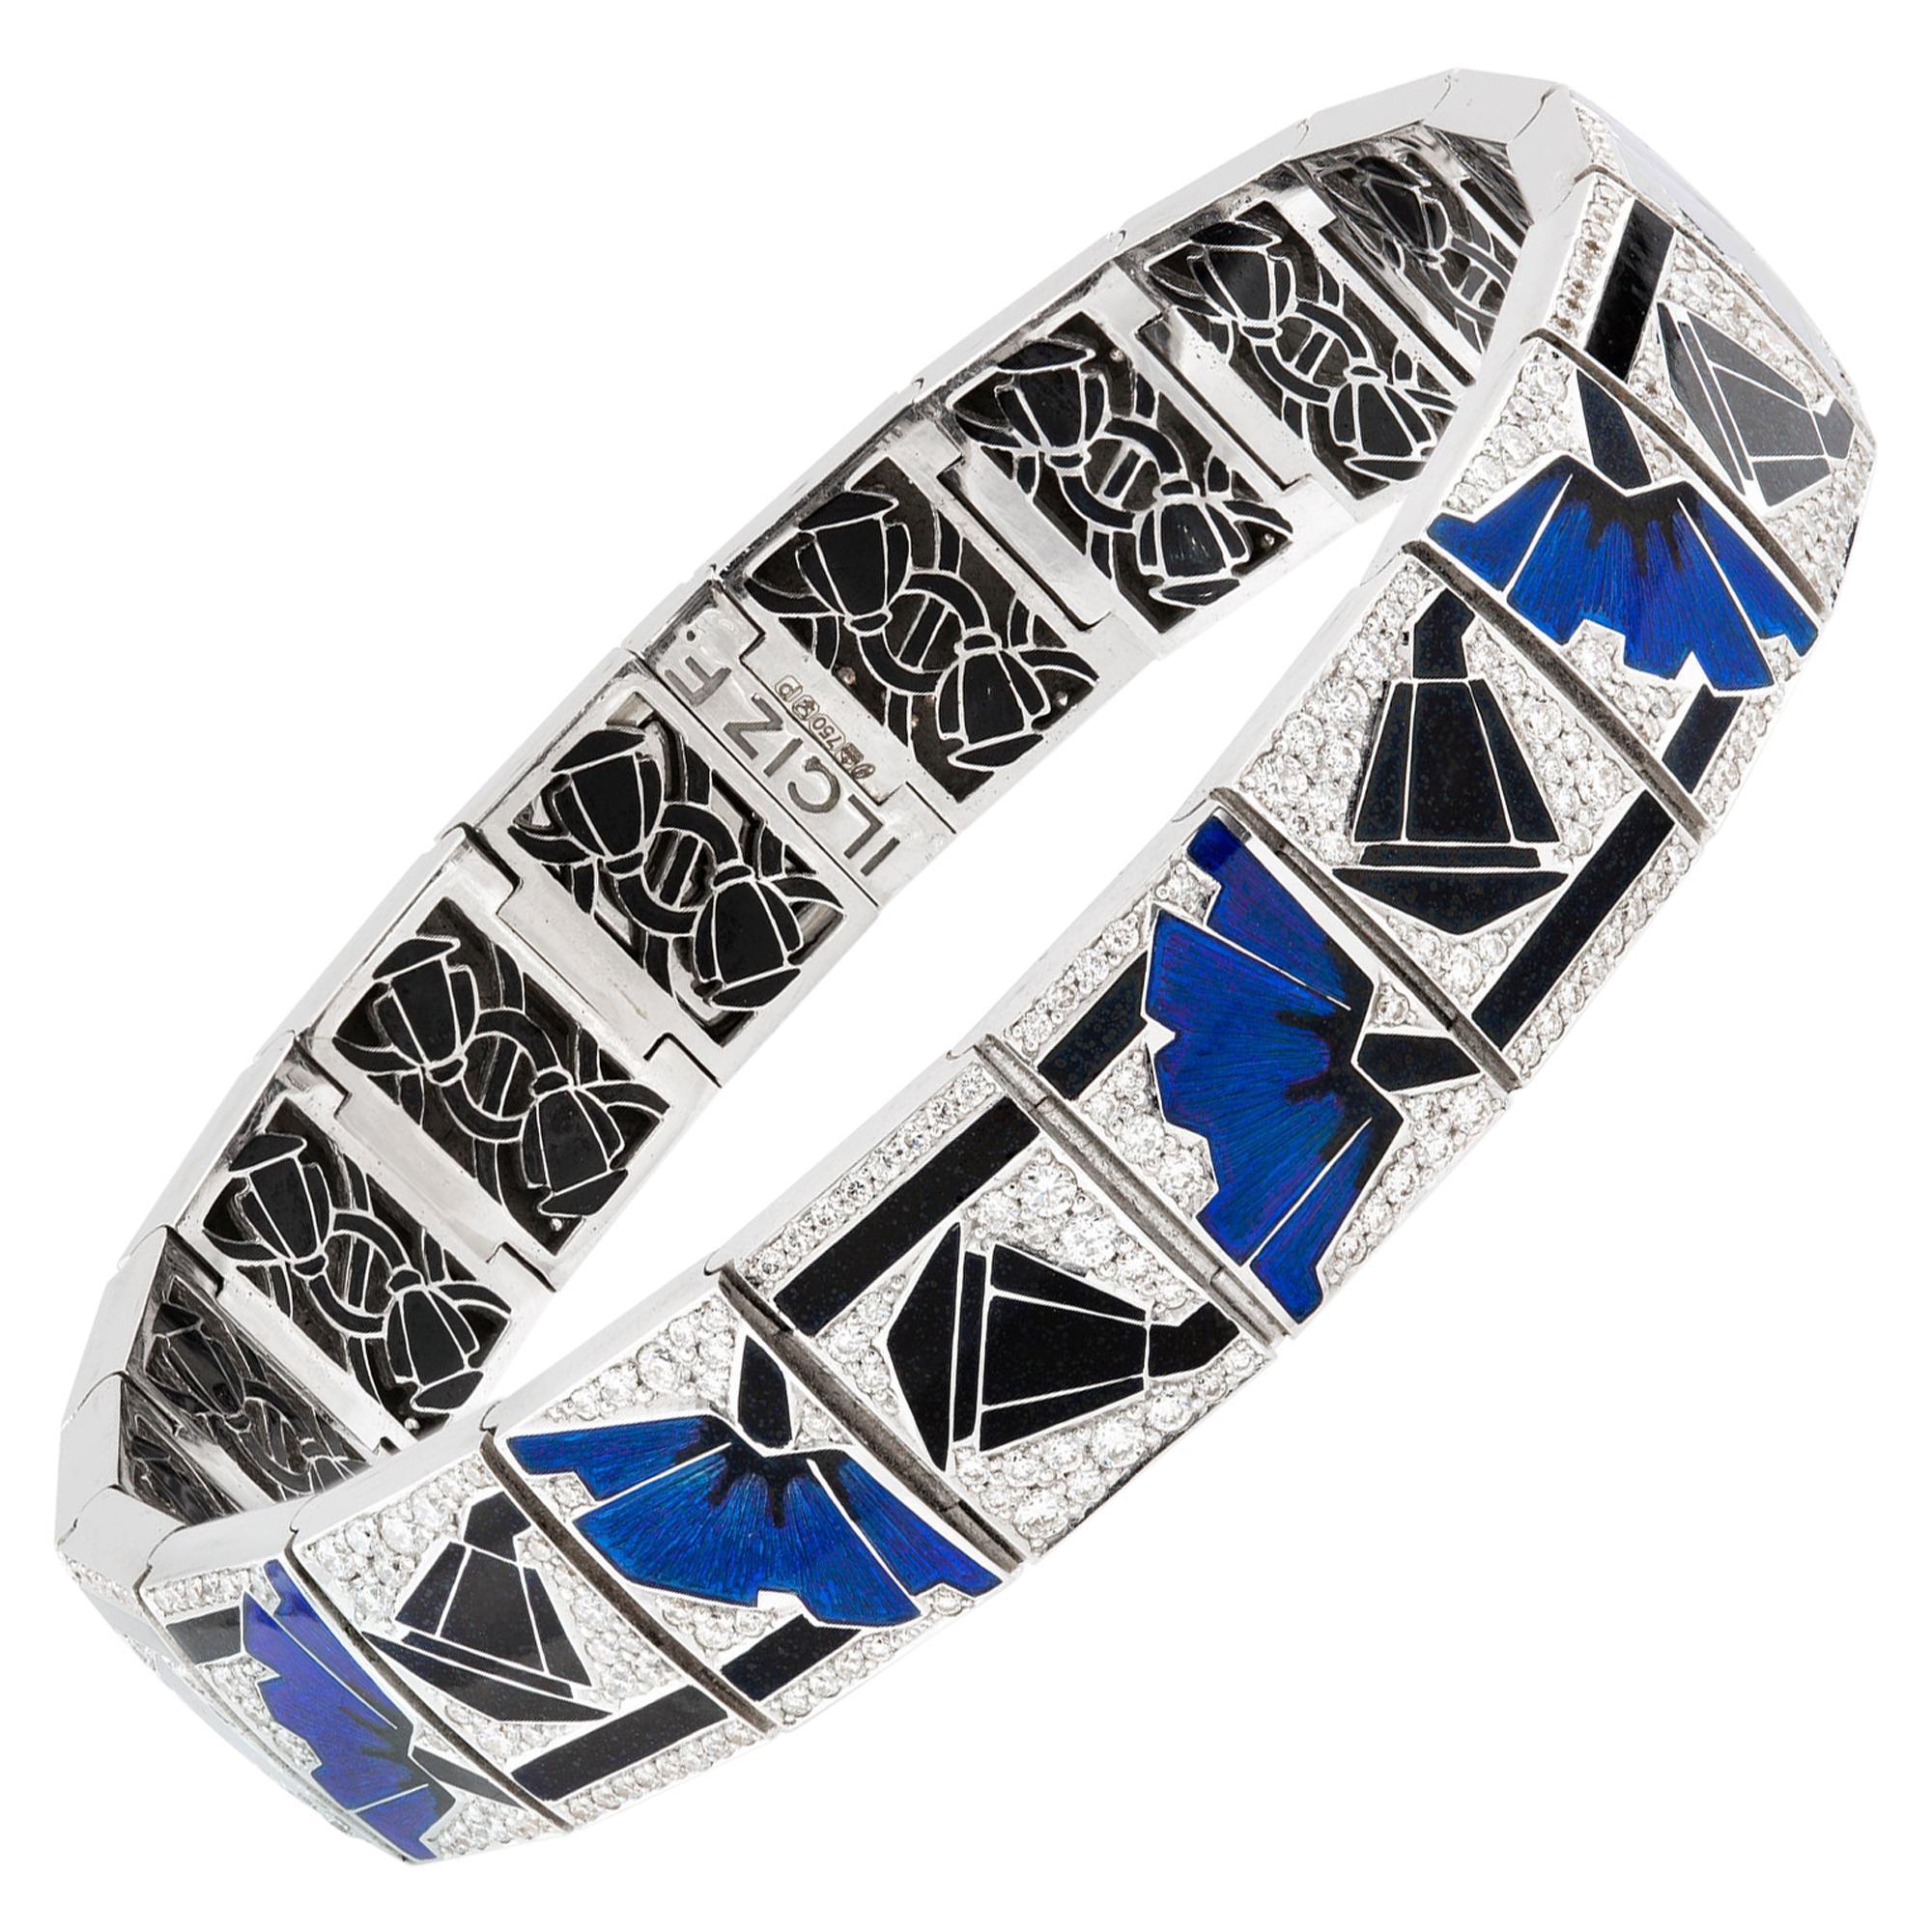 Blue Poppies Art Deco Style Bracelet by Ilgiz F